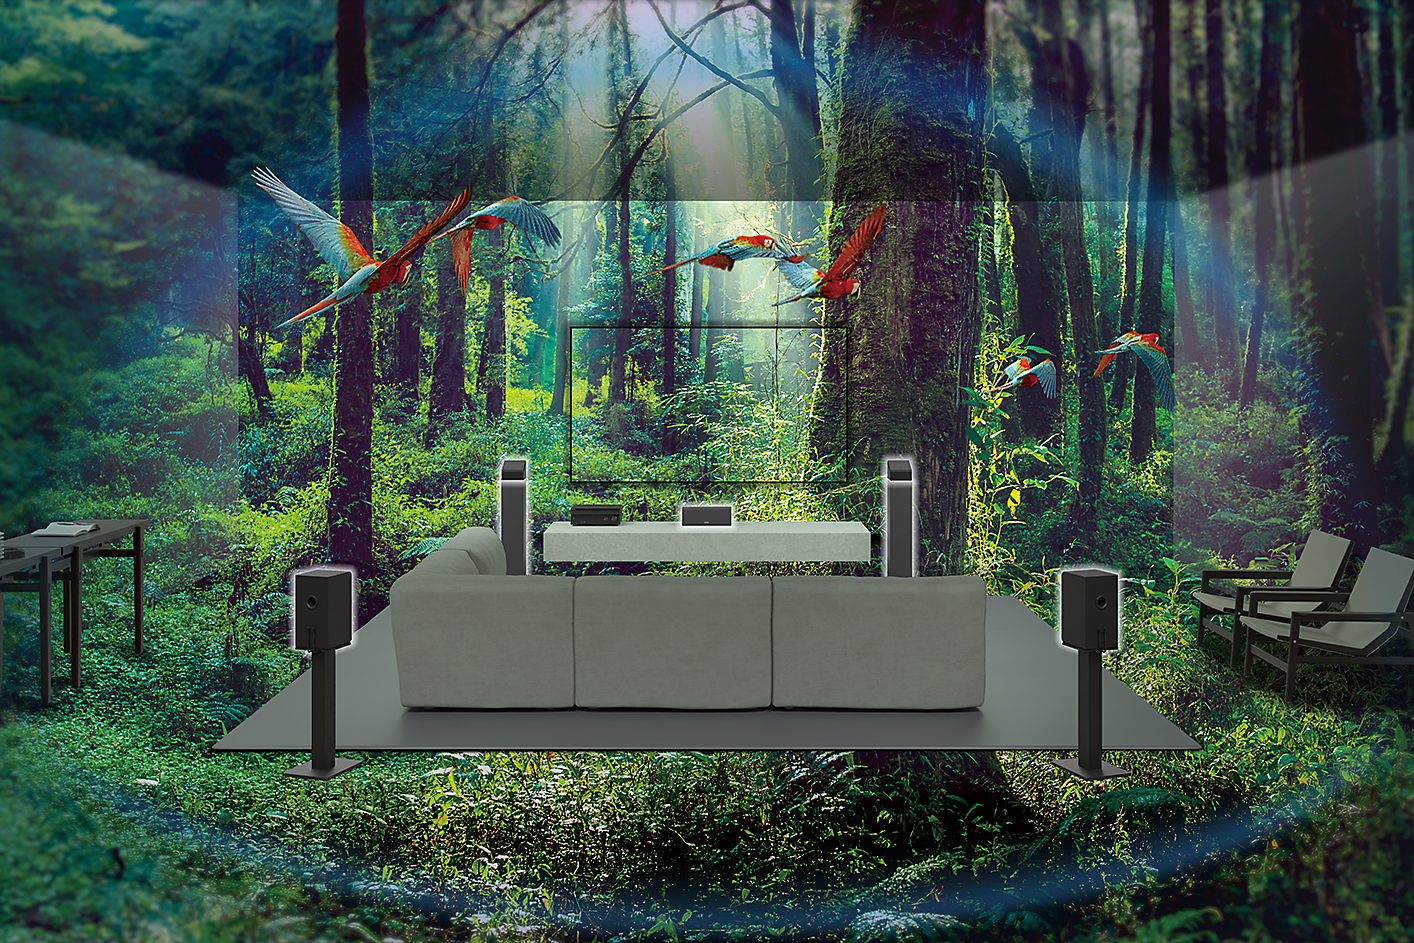 Billede af en sofa, TV og højttalere midt i en skov, hvor der flyver papegøjer omkring